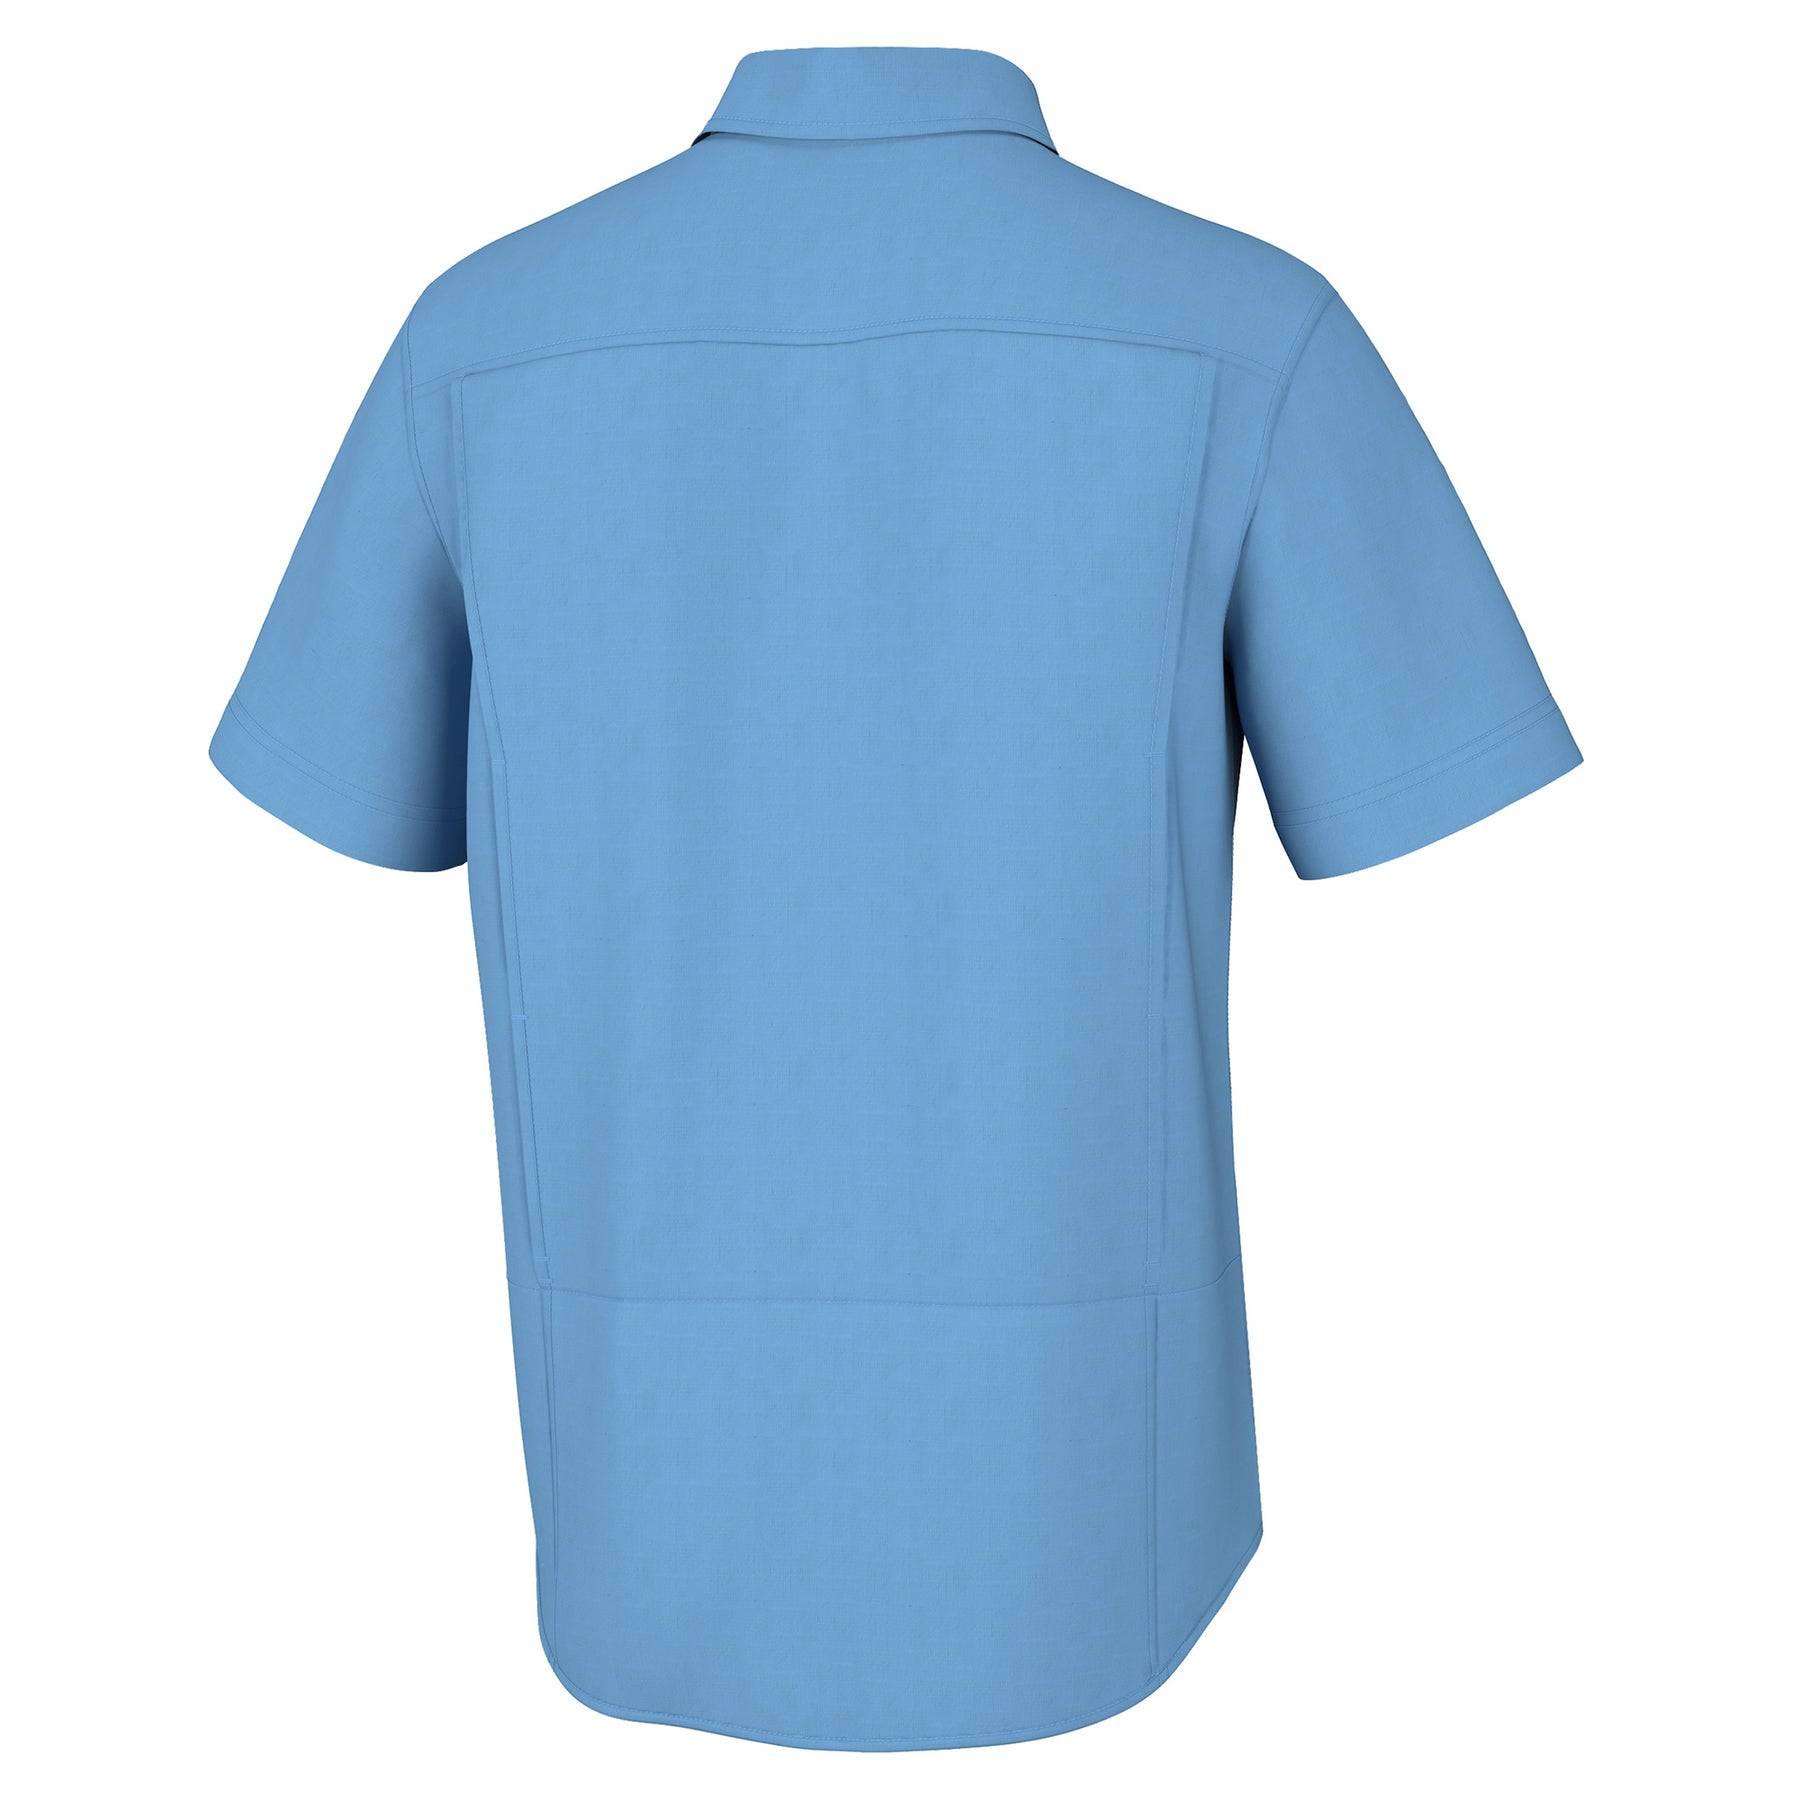 HUK Creekbed Short Sleeve Buton Down Shirt - Marolina Blue